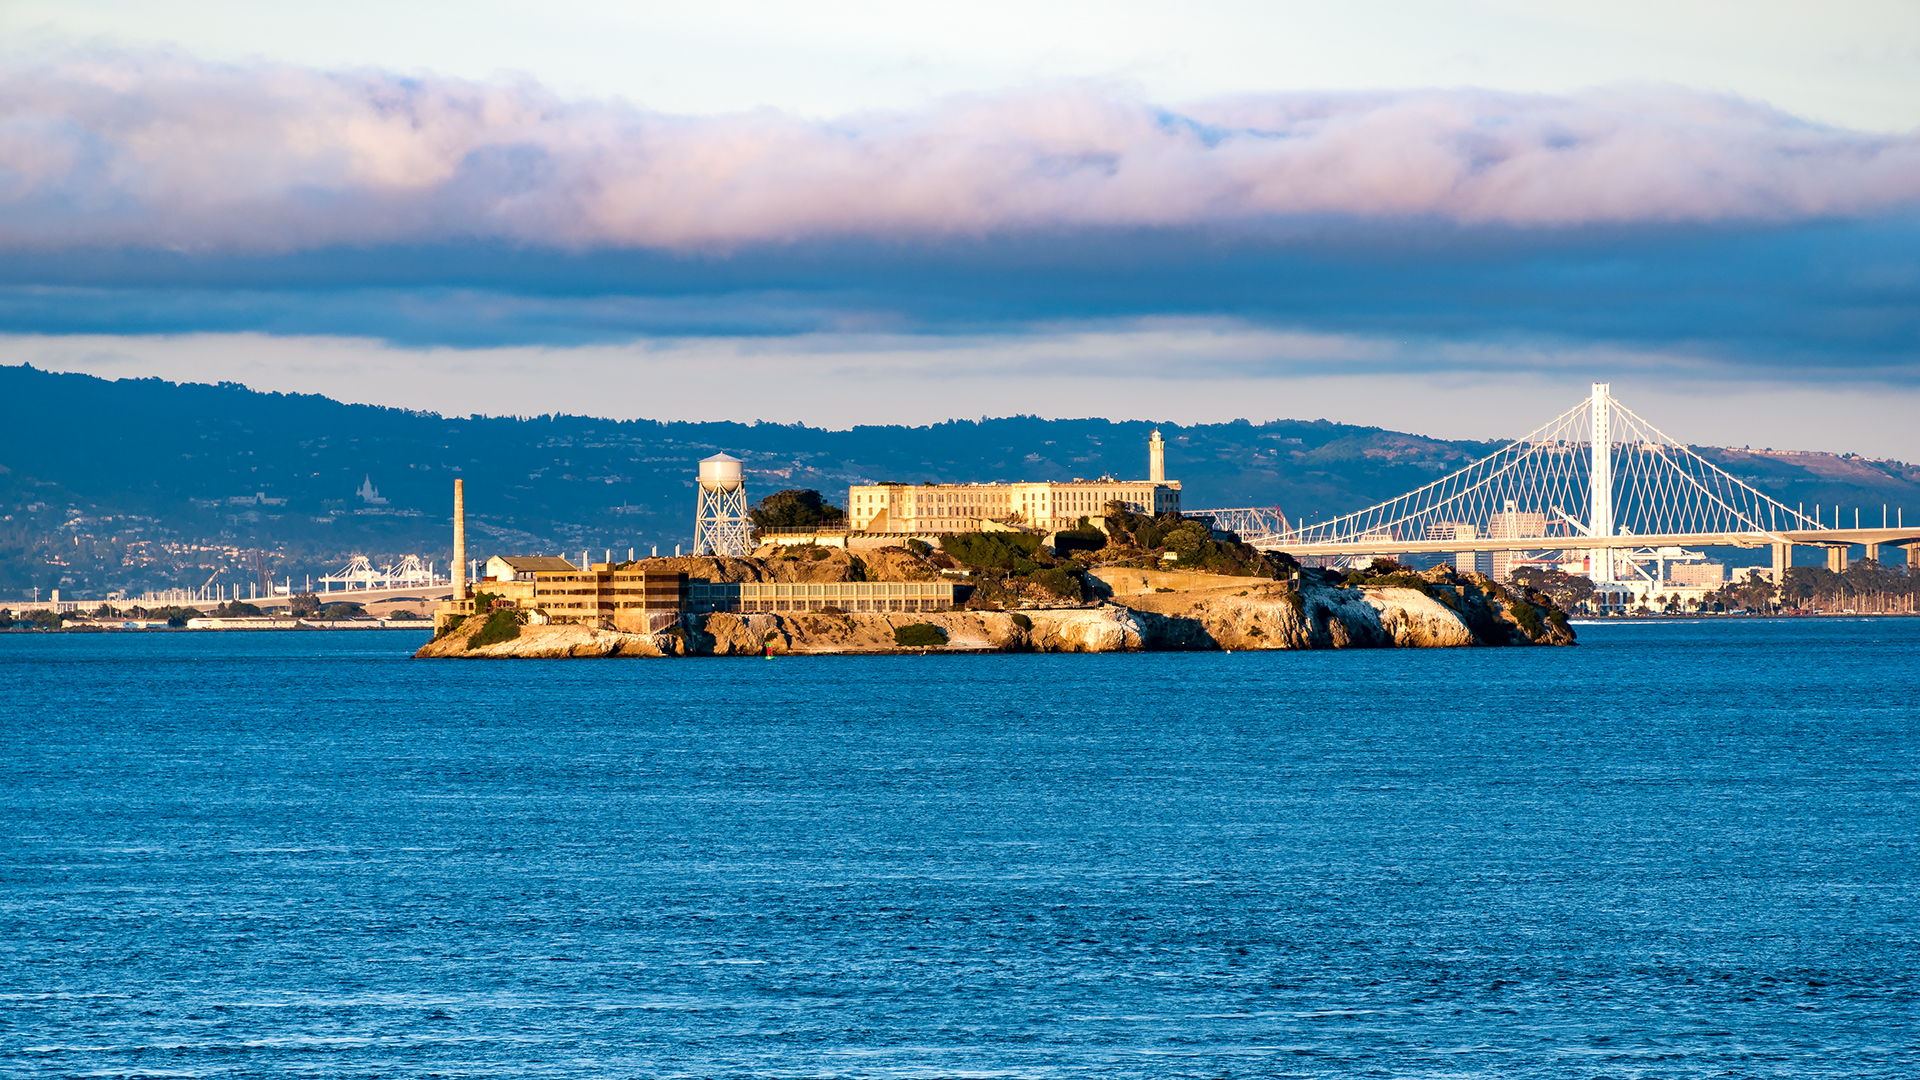 General 1920x1080 architecture bridge water sea island Alcatraz San Francisco USA monastery prison cityscape clouds rocks hills Oakland Bay Bridge